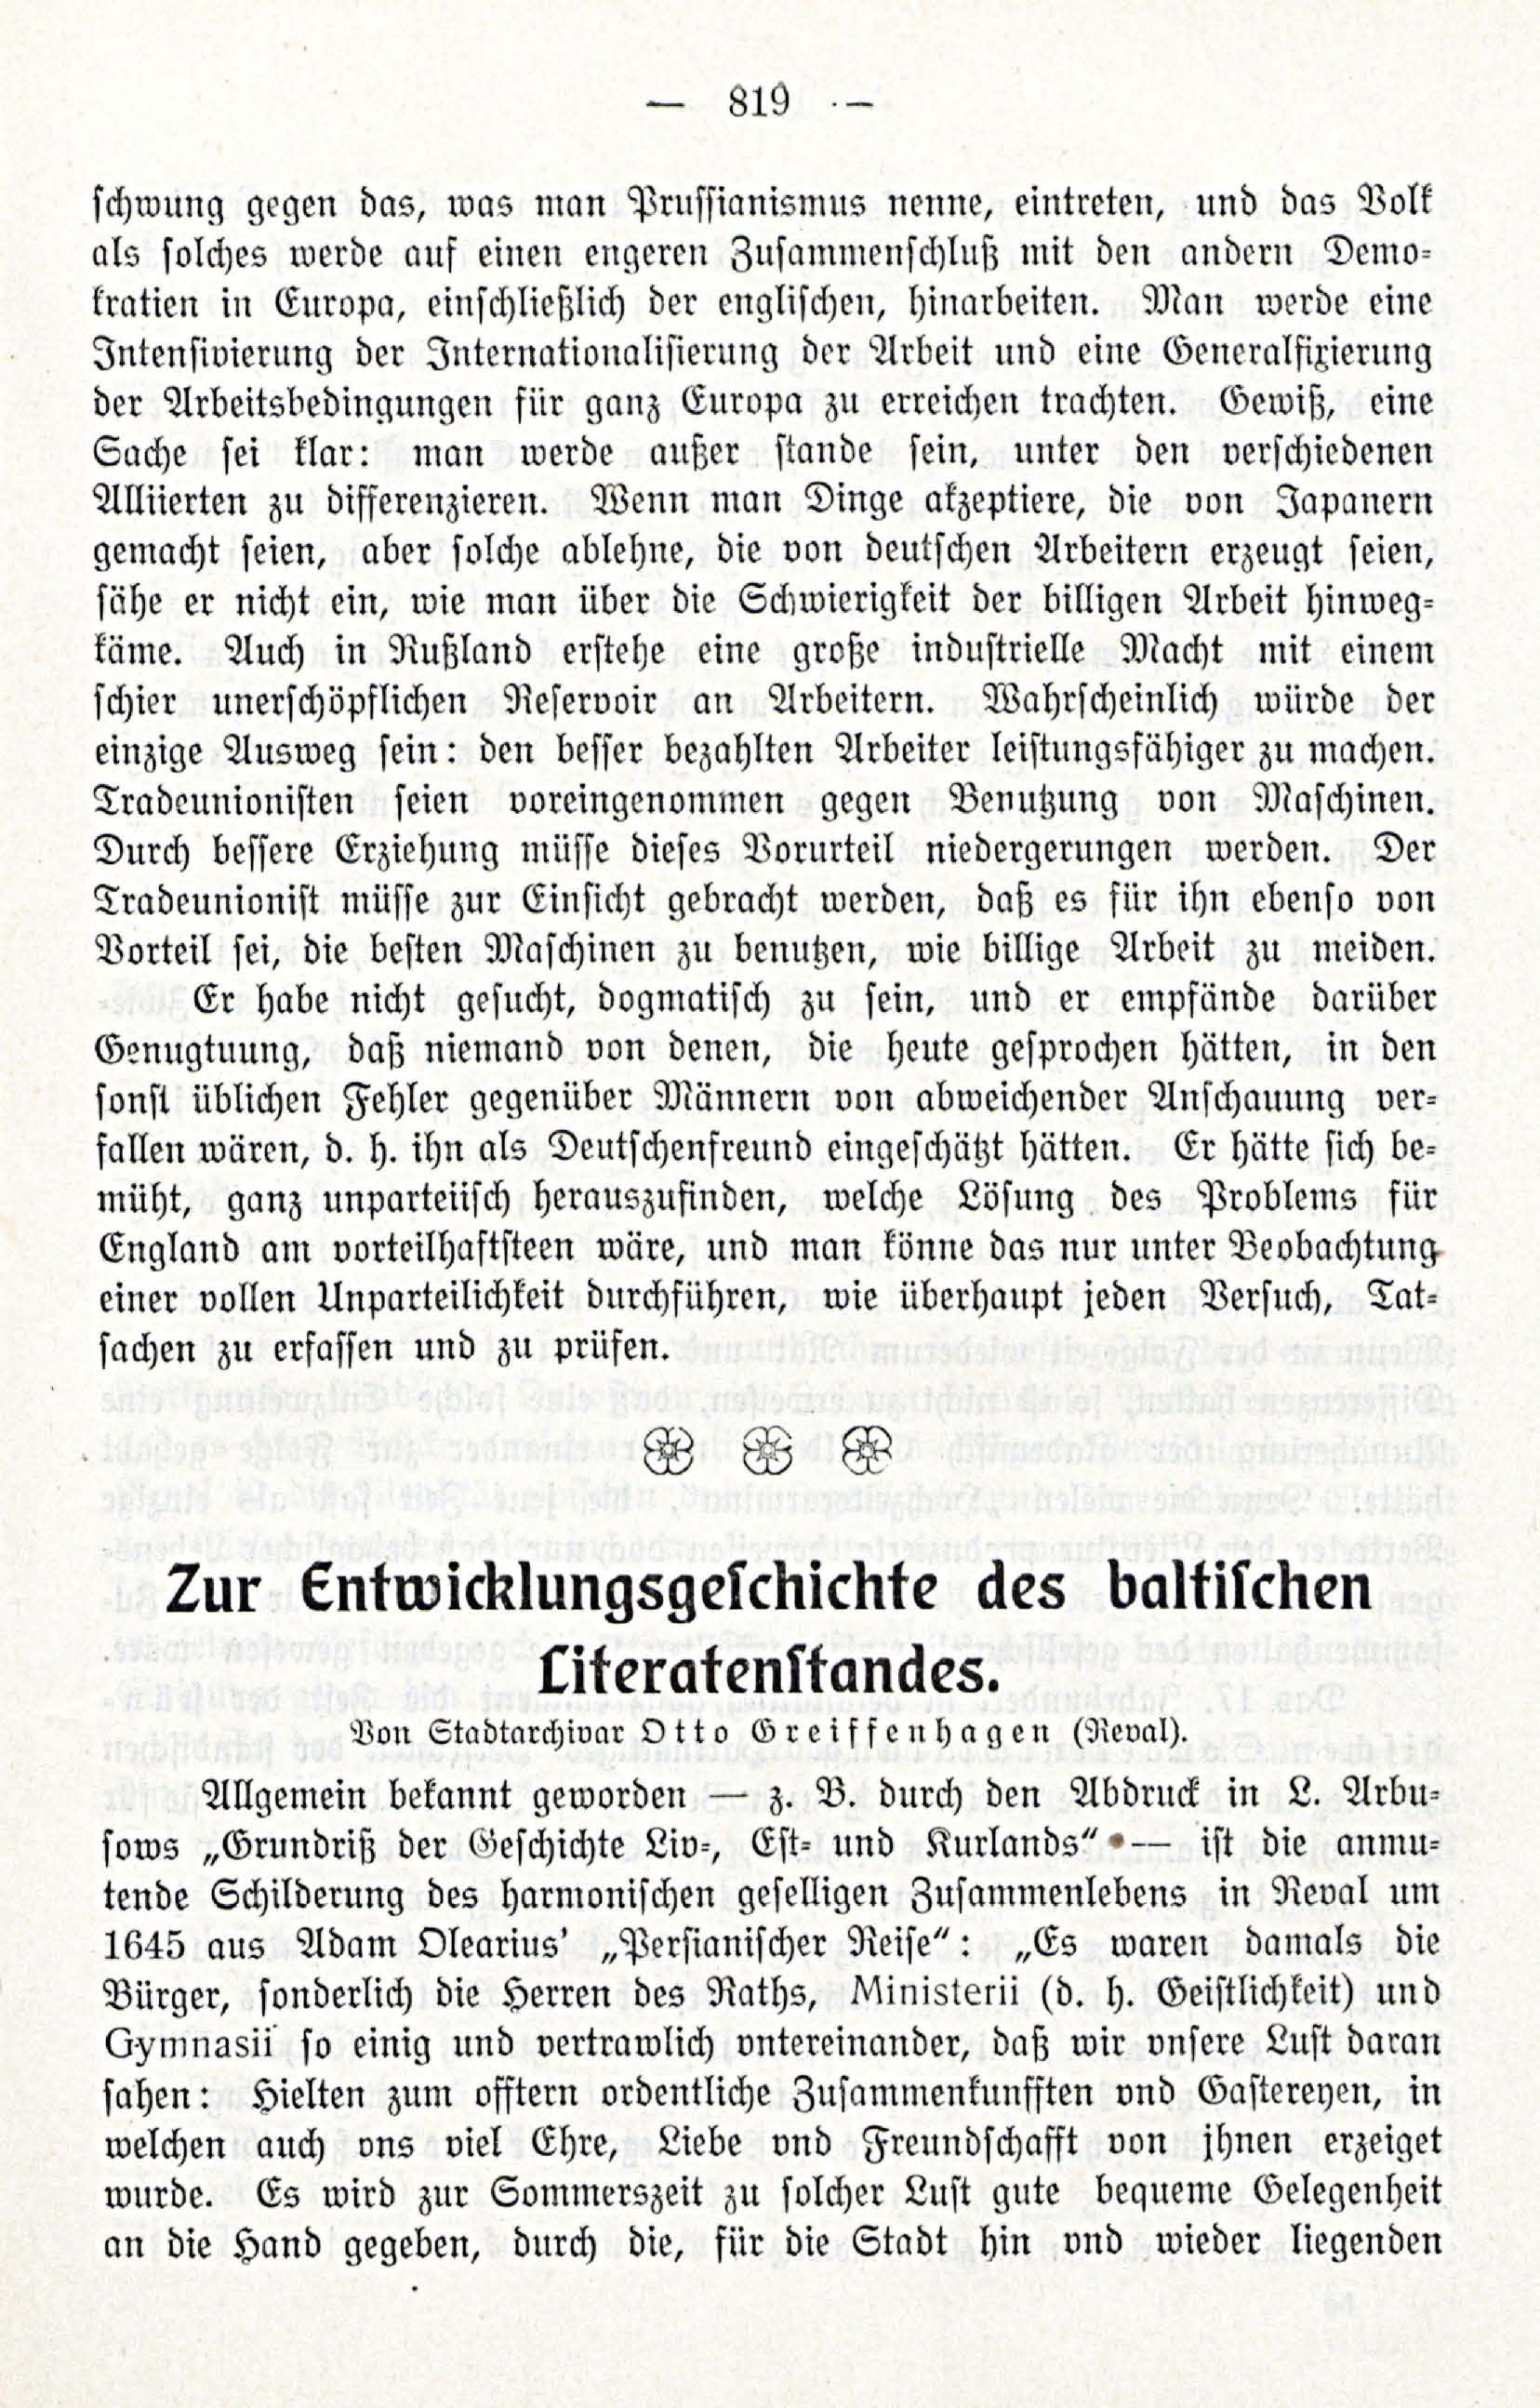 Zur Entwicklungesgescshichte des baltischen Literatenstandes (1914) | 1. (819) Main body of text